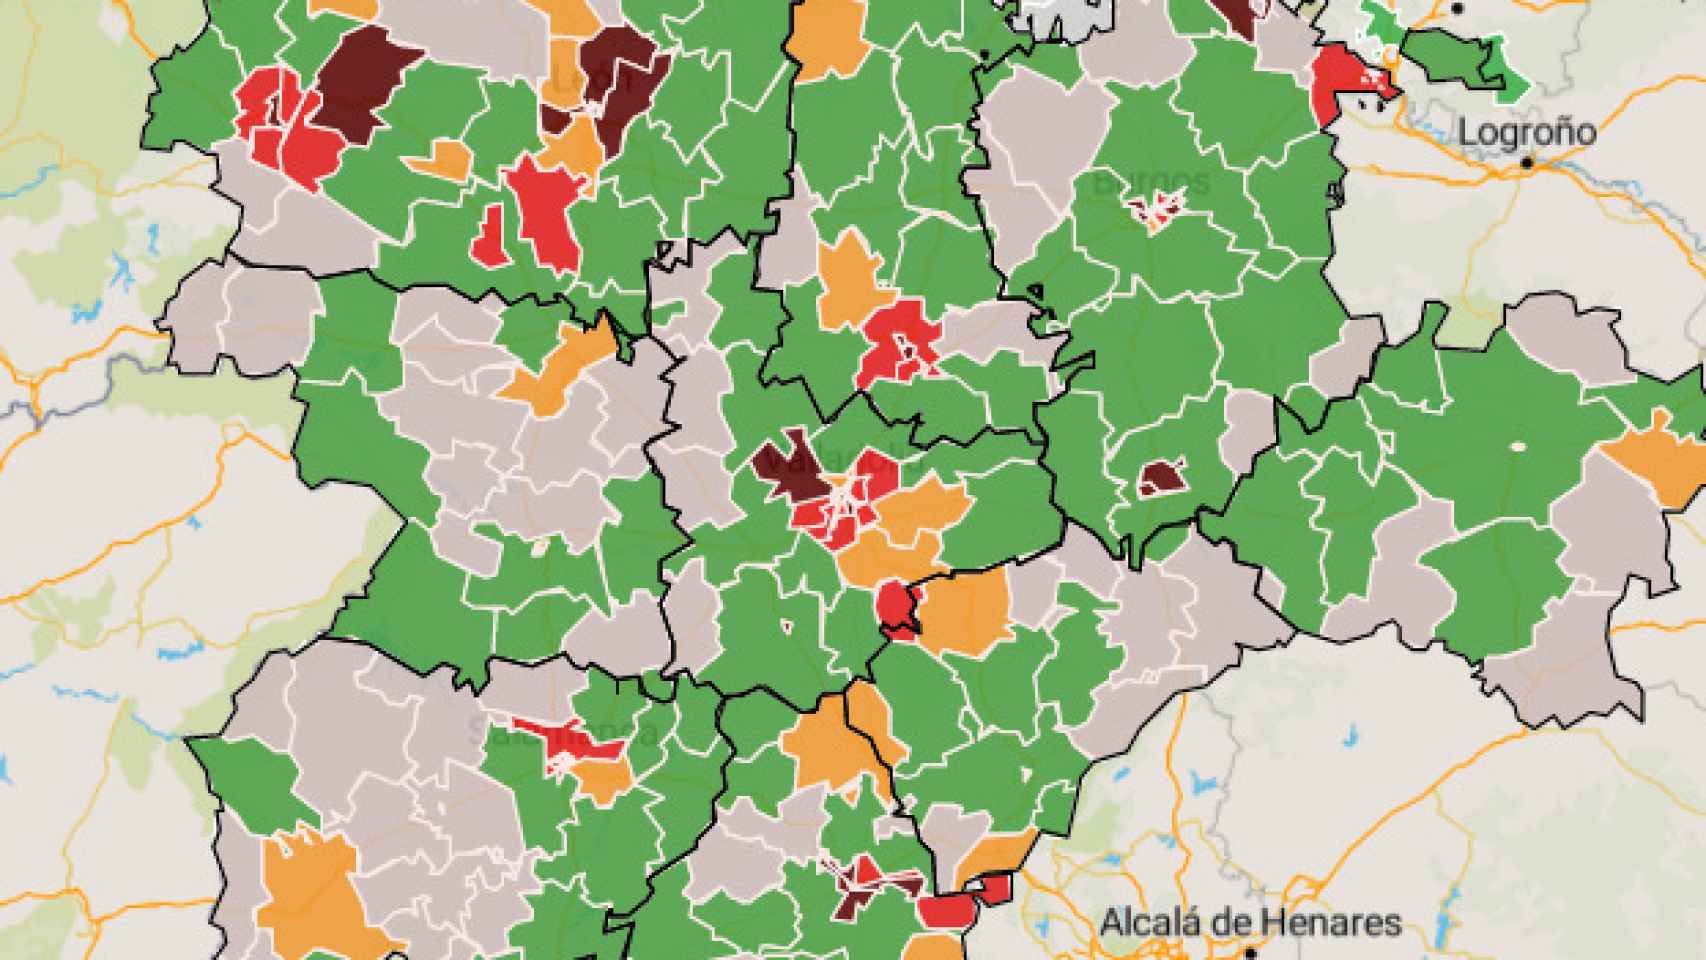 Las zonas  en rojo oscuro son las más saturadas por consultas pediátricas